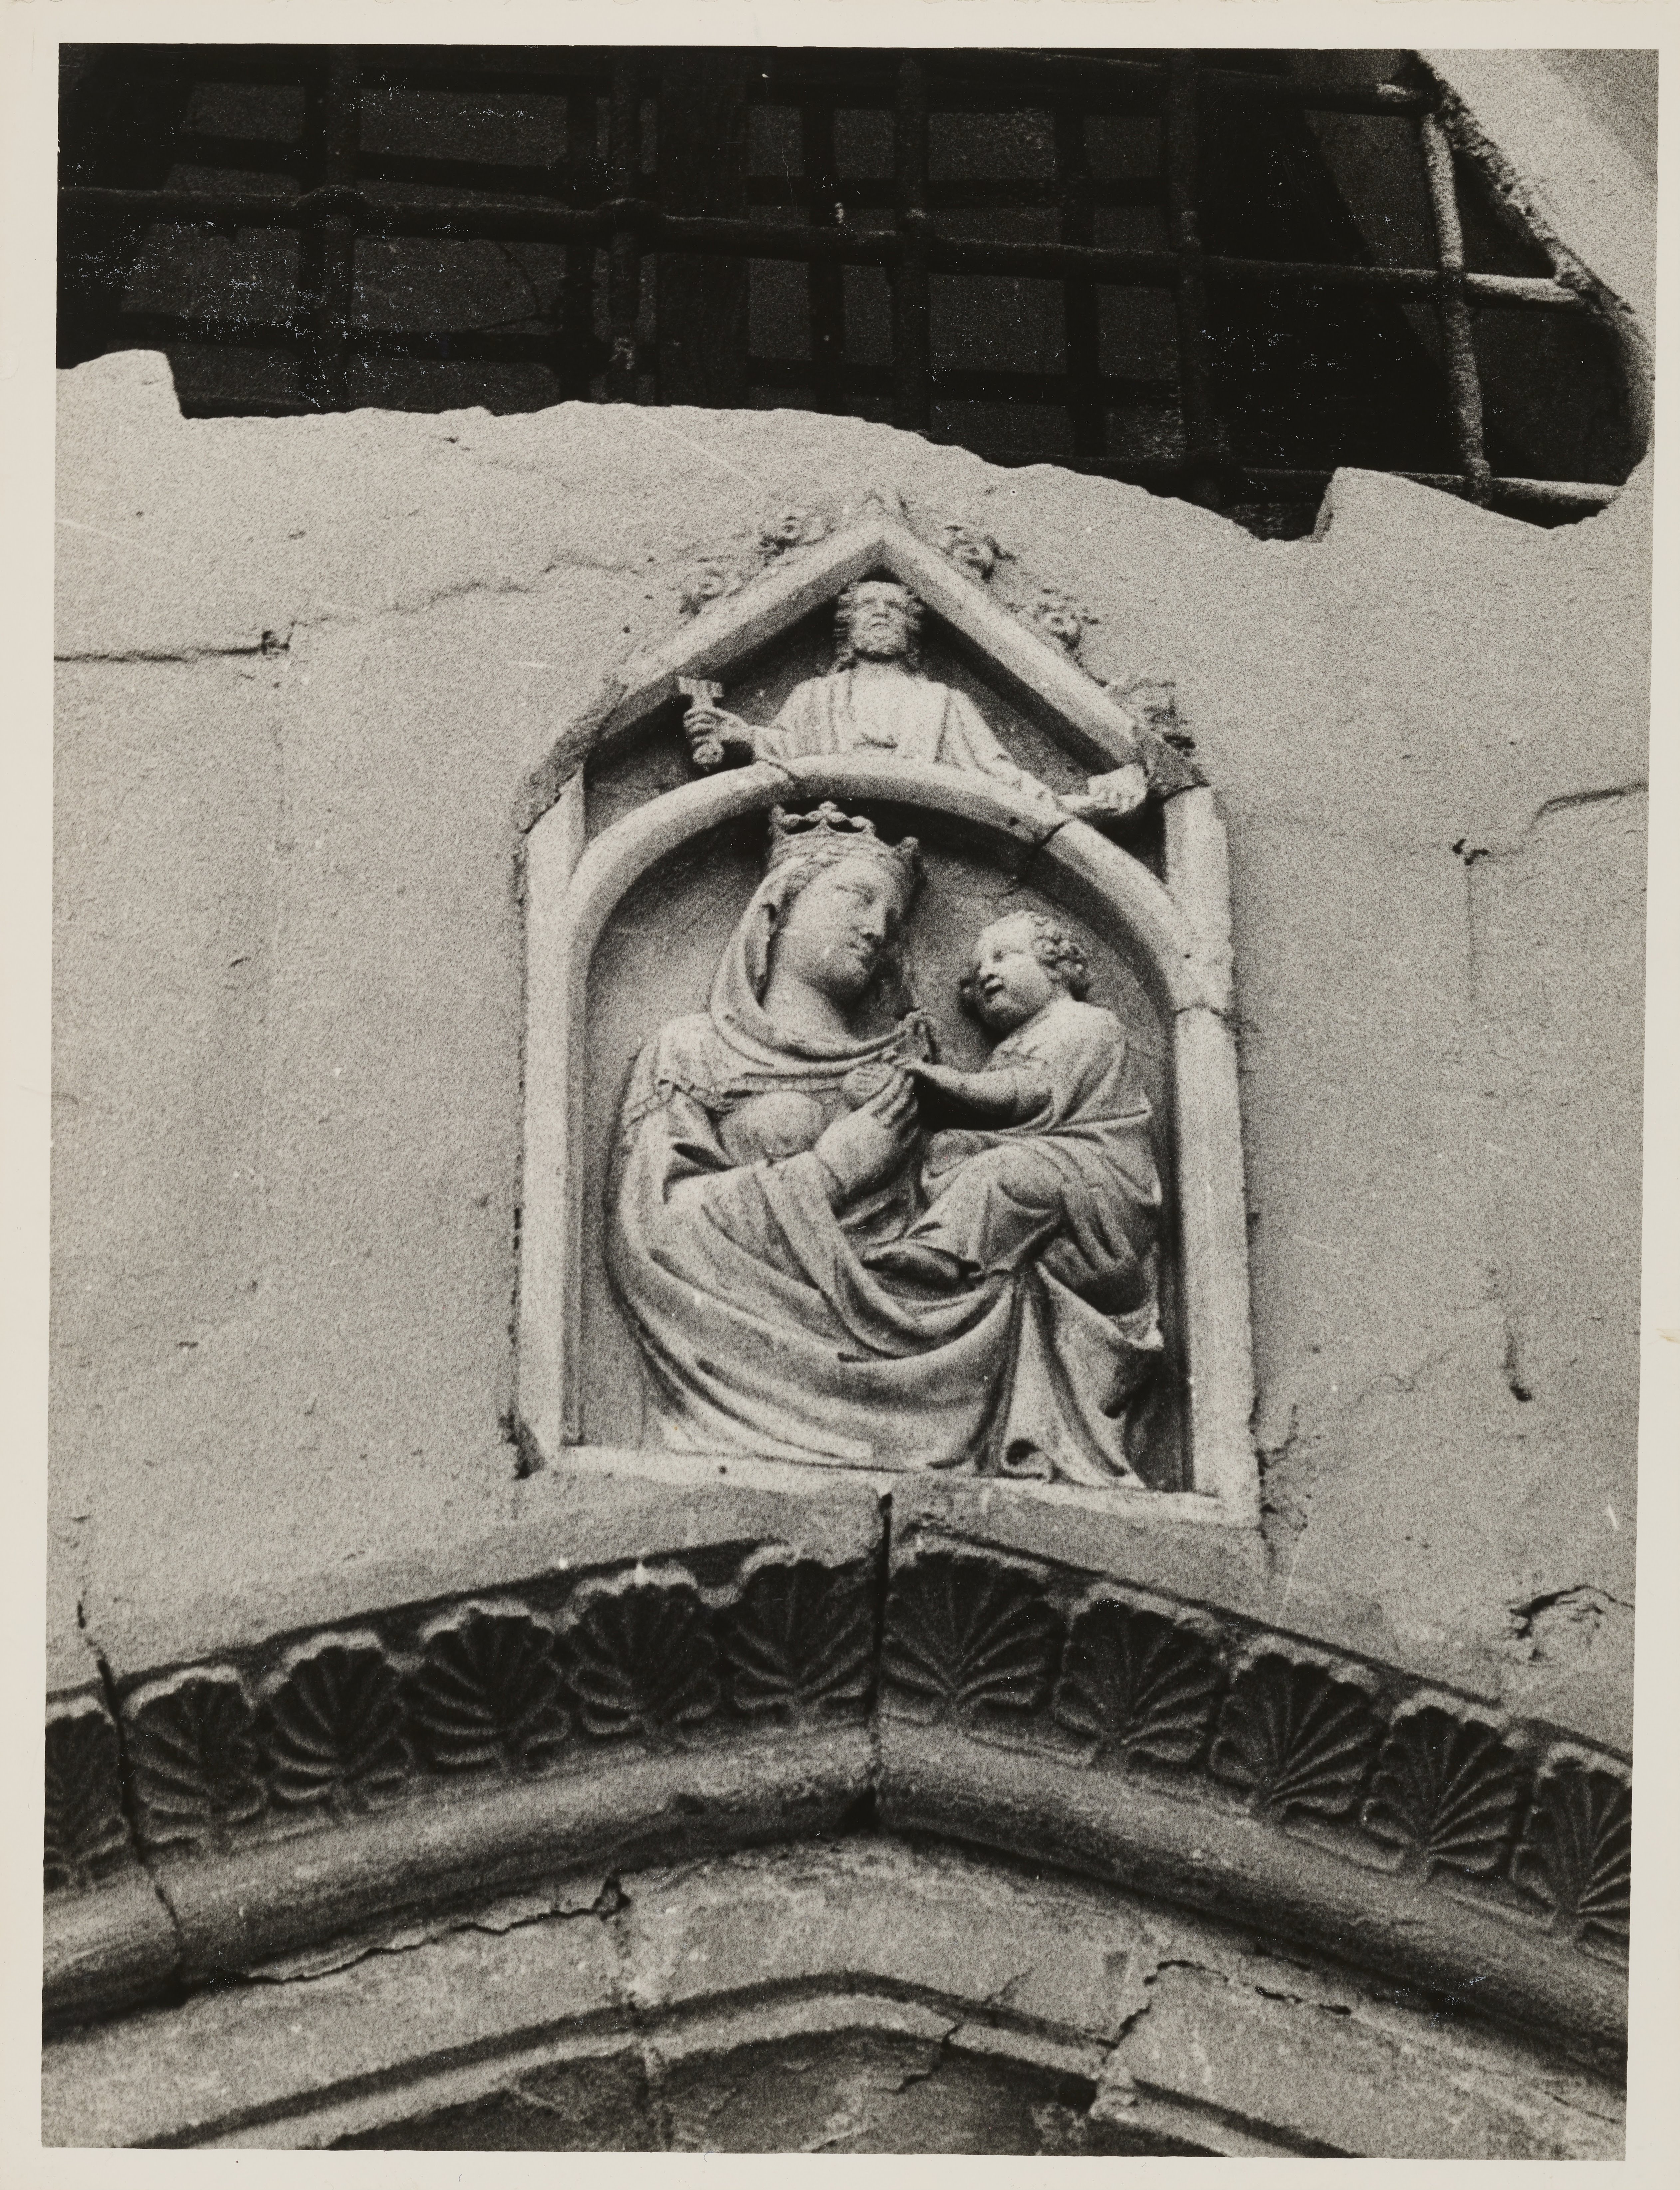 Fotografo non identificato, Castrovillari - Chiesa di S. Maria del Castello, porta laterale di un ingresso, La Vergine con il Bambino, 1951-1975, gelatina ai sali d'argento, MPI146096